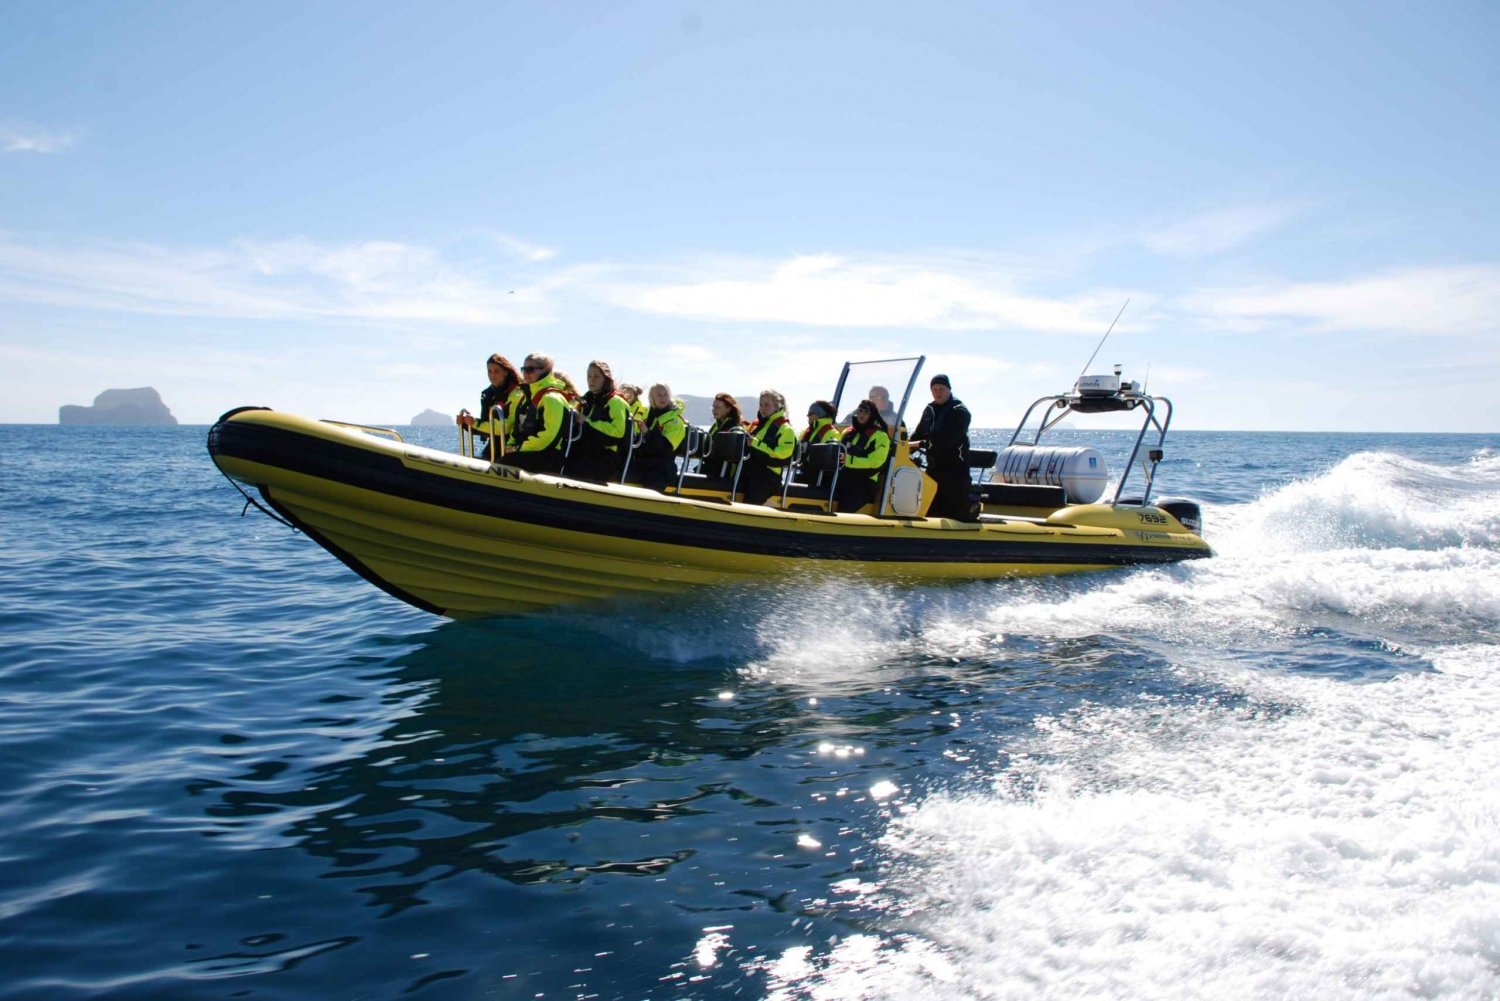 Reykjavik : observation de baleines en hors-bord semi-rigide